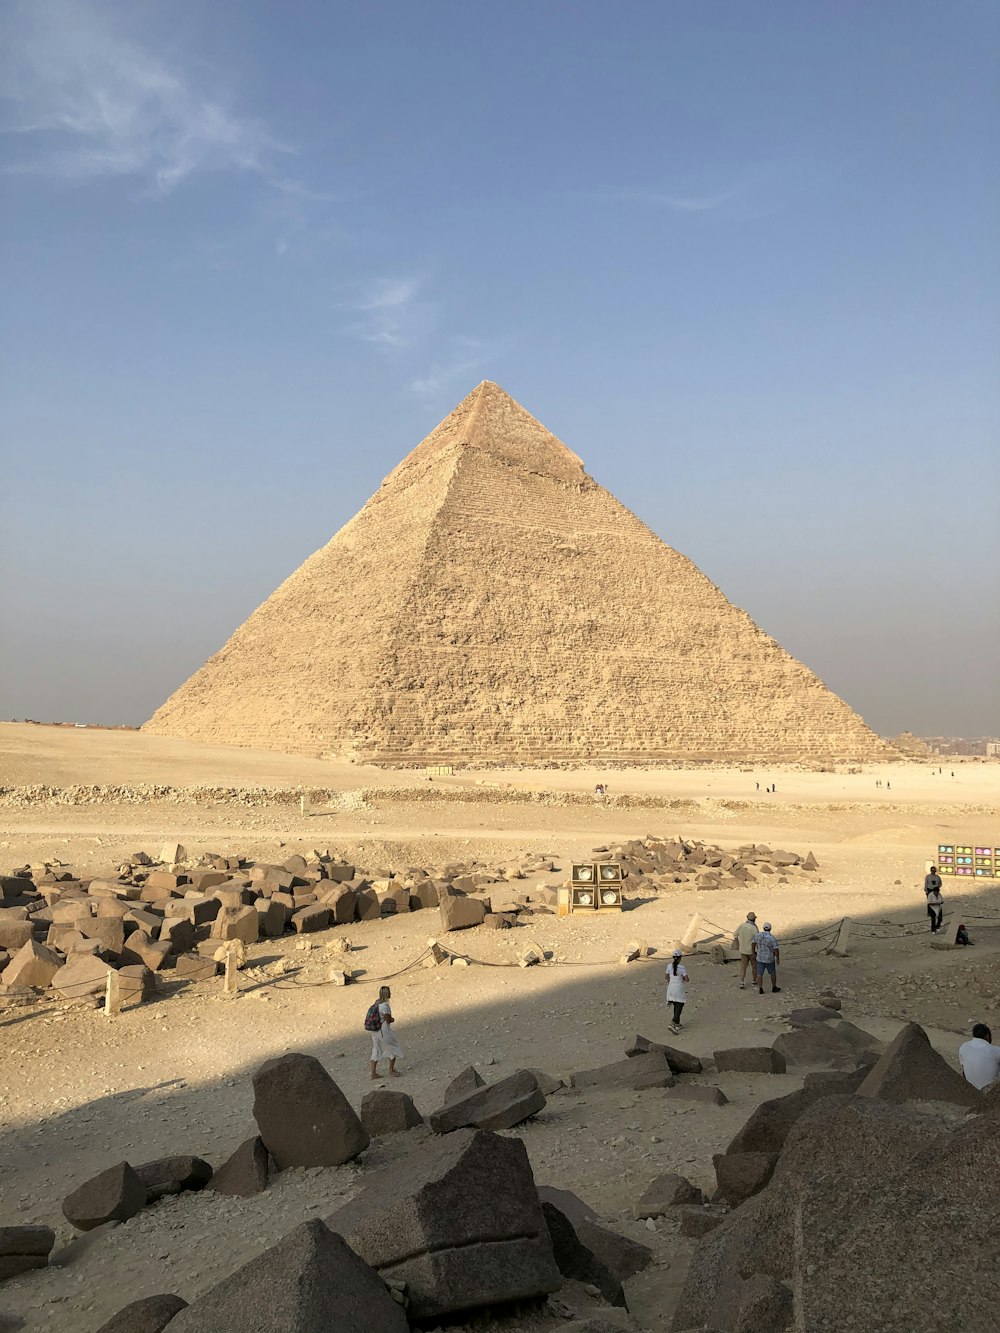 persone sulla sabbia marrone vicino alla piramide durante il giorno